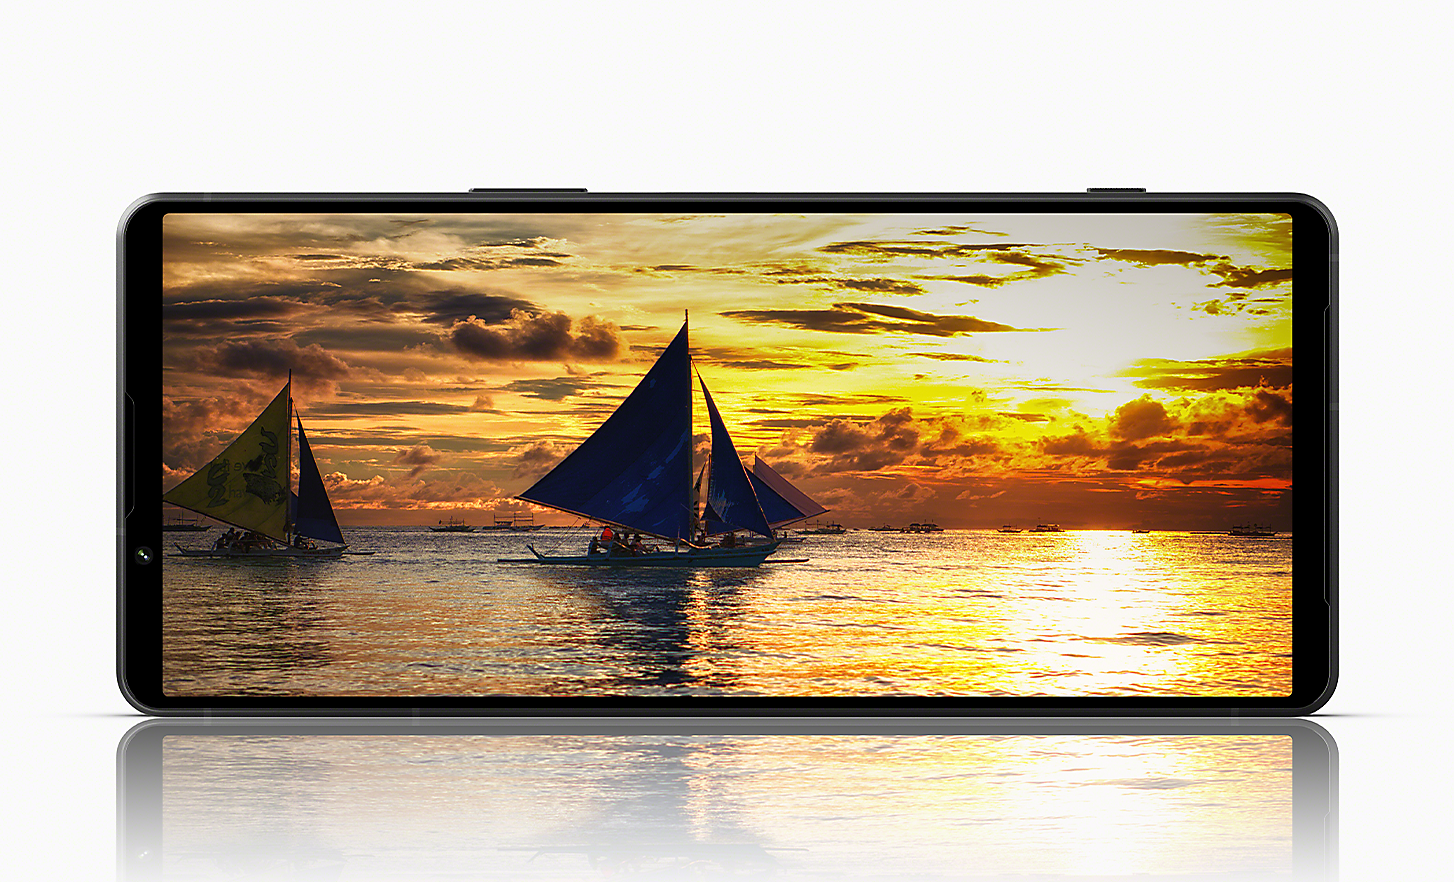 Xperia 1 V in posizione orizzontale che mostra un'immagine di barche a vela in mare con un tramonto spettacolare sullo sfondo